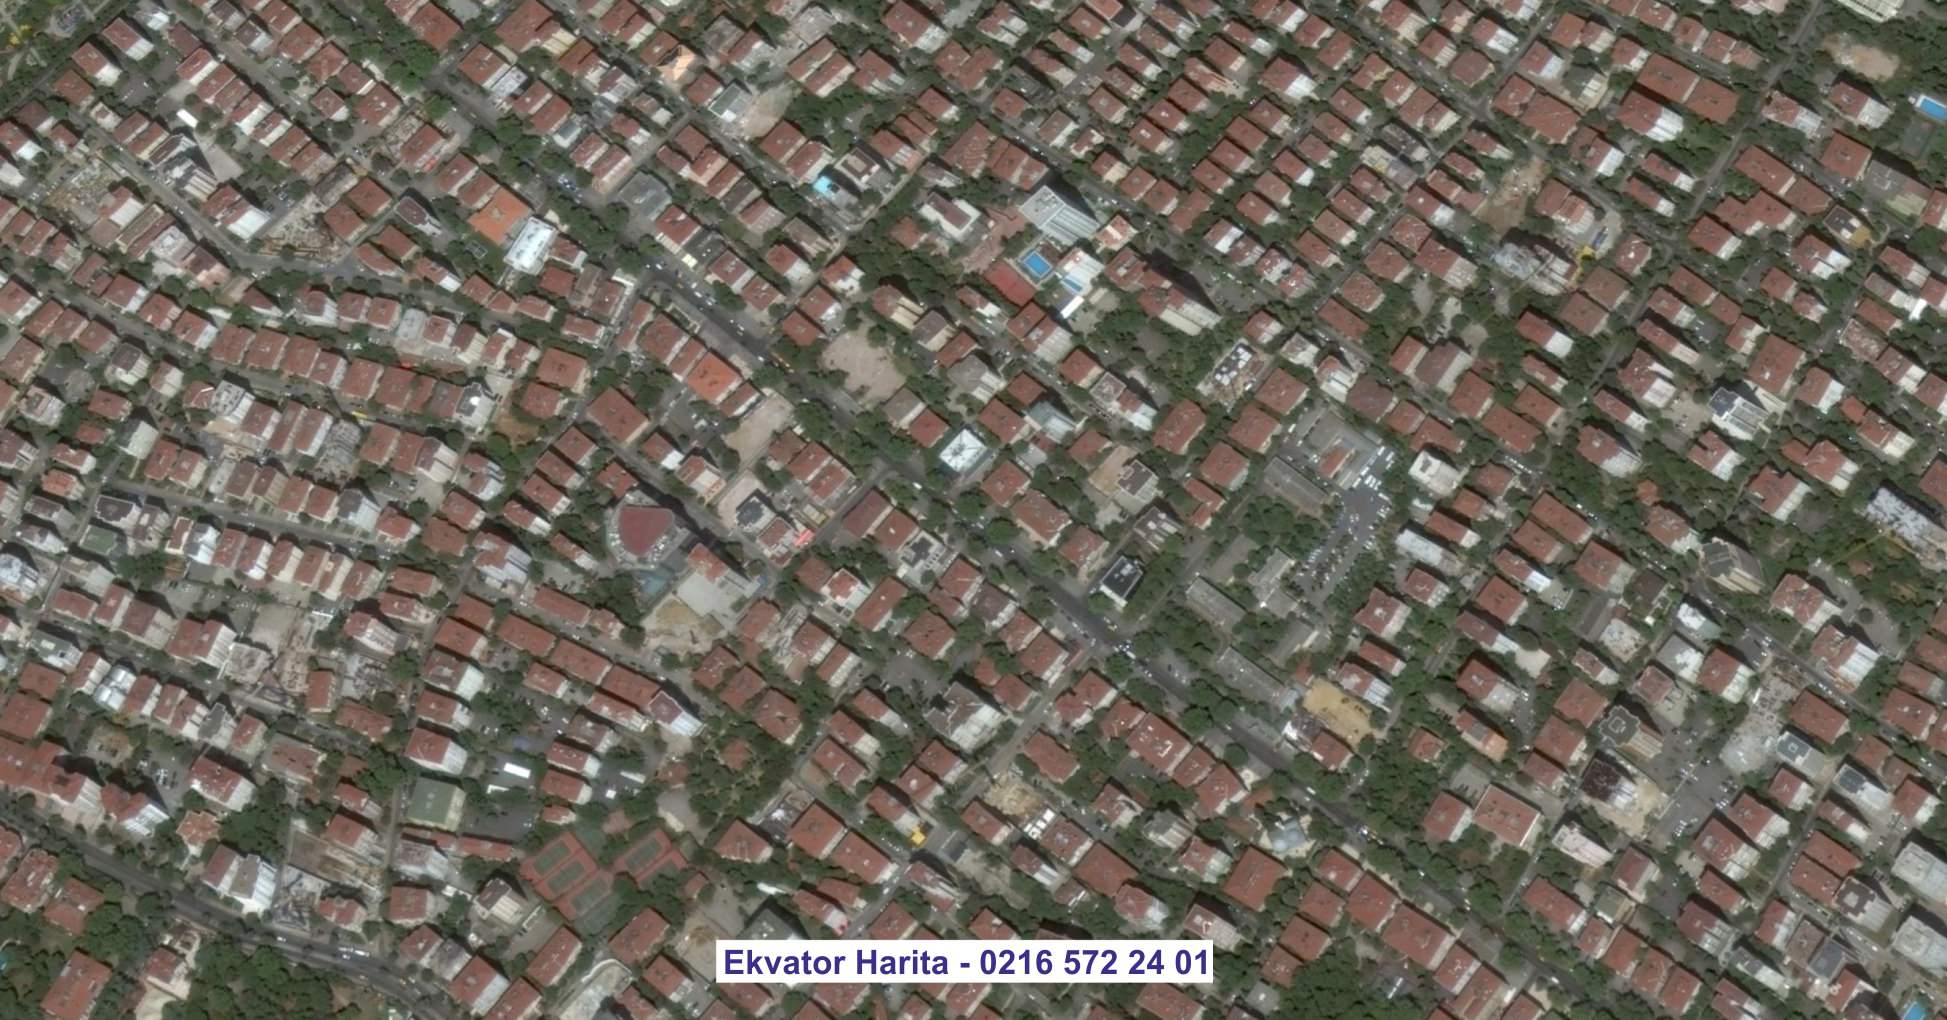 Çorlu Uydu Görüntüsü Örnek Fotoğrafı